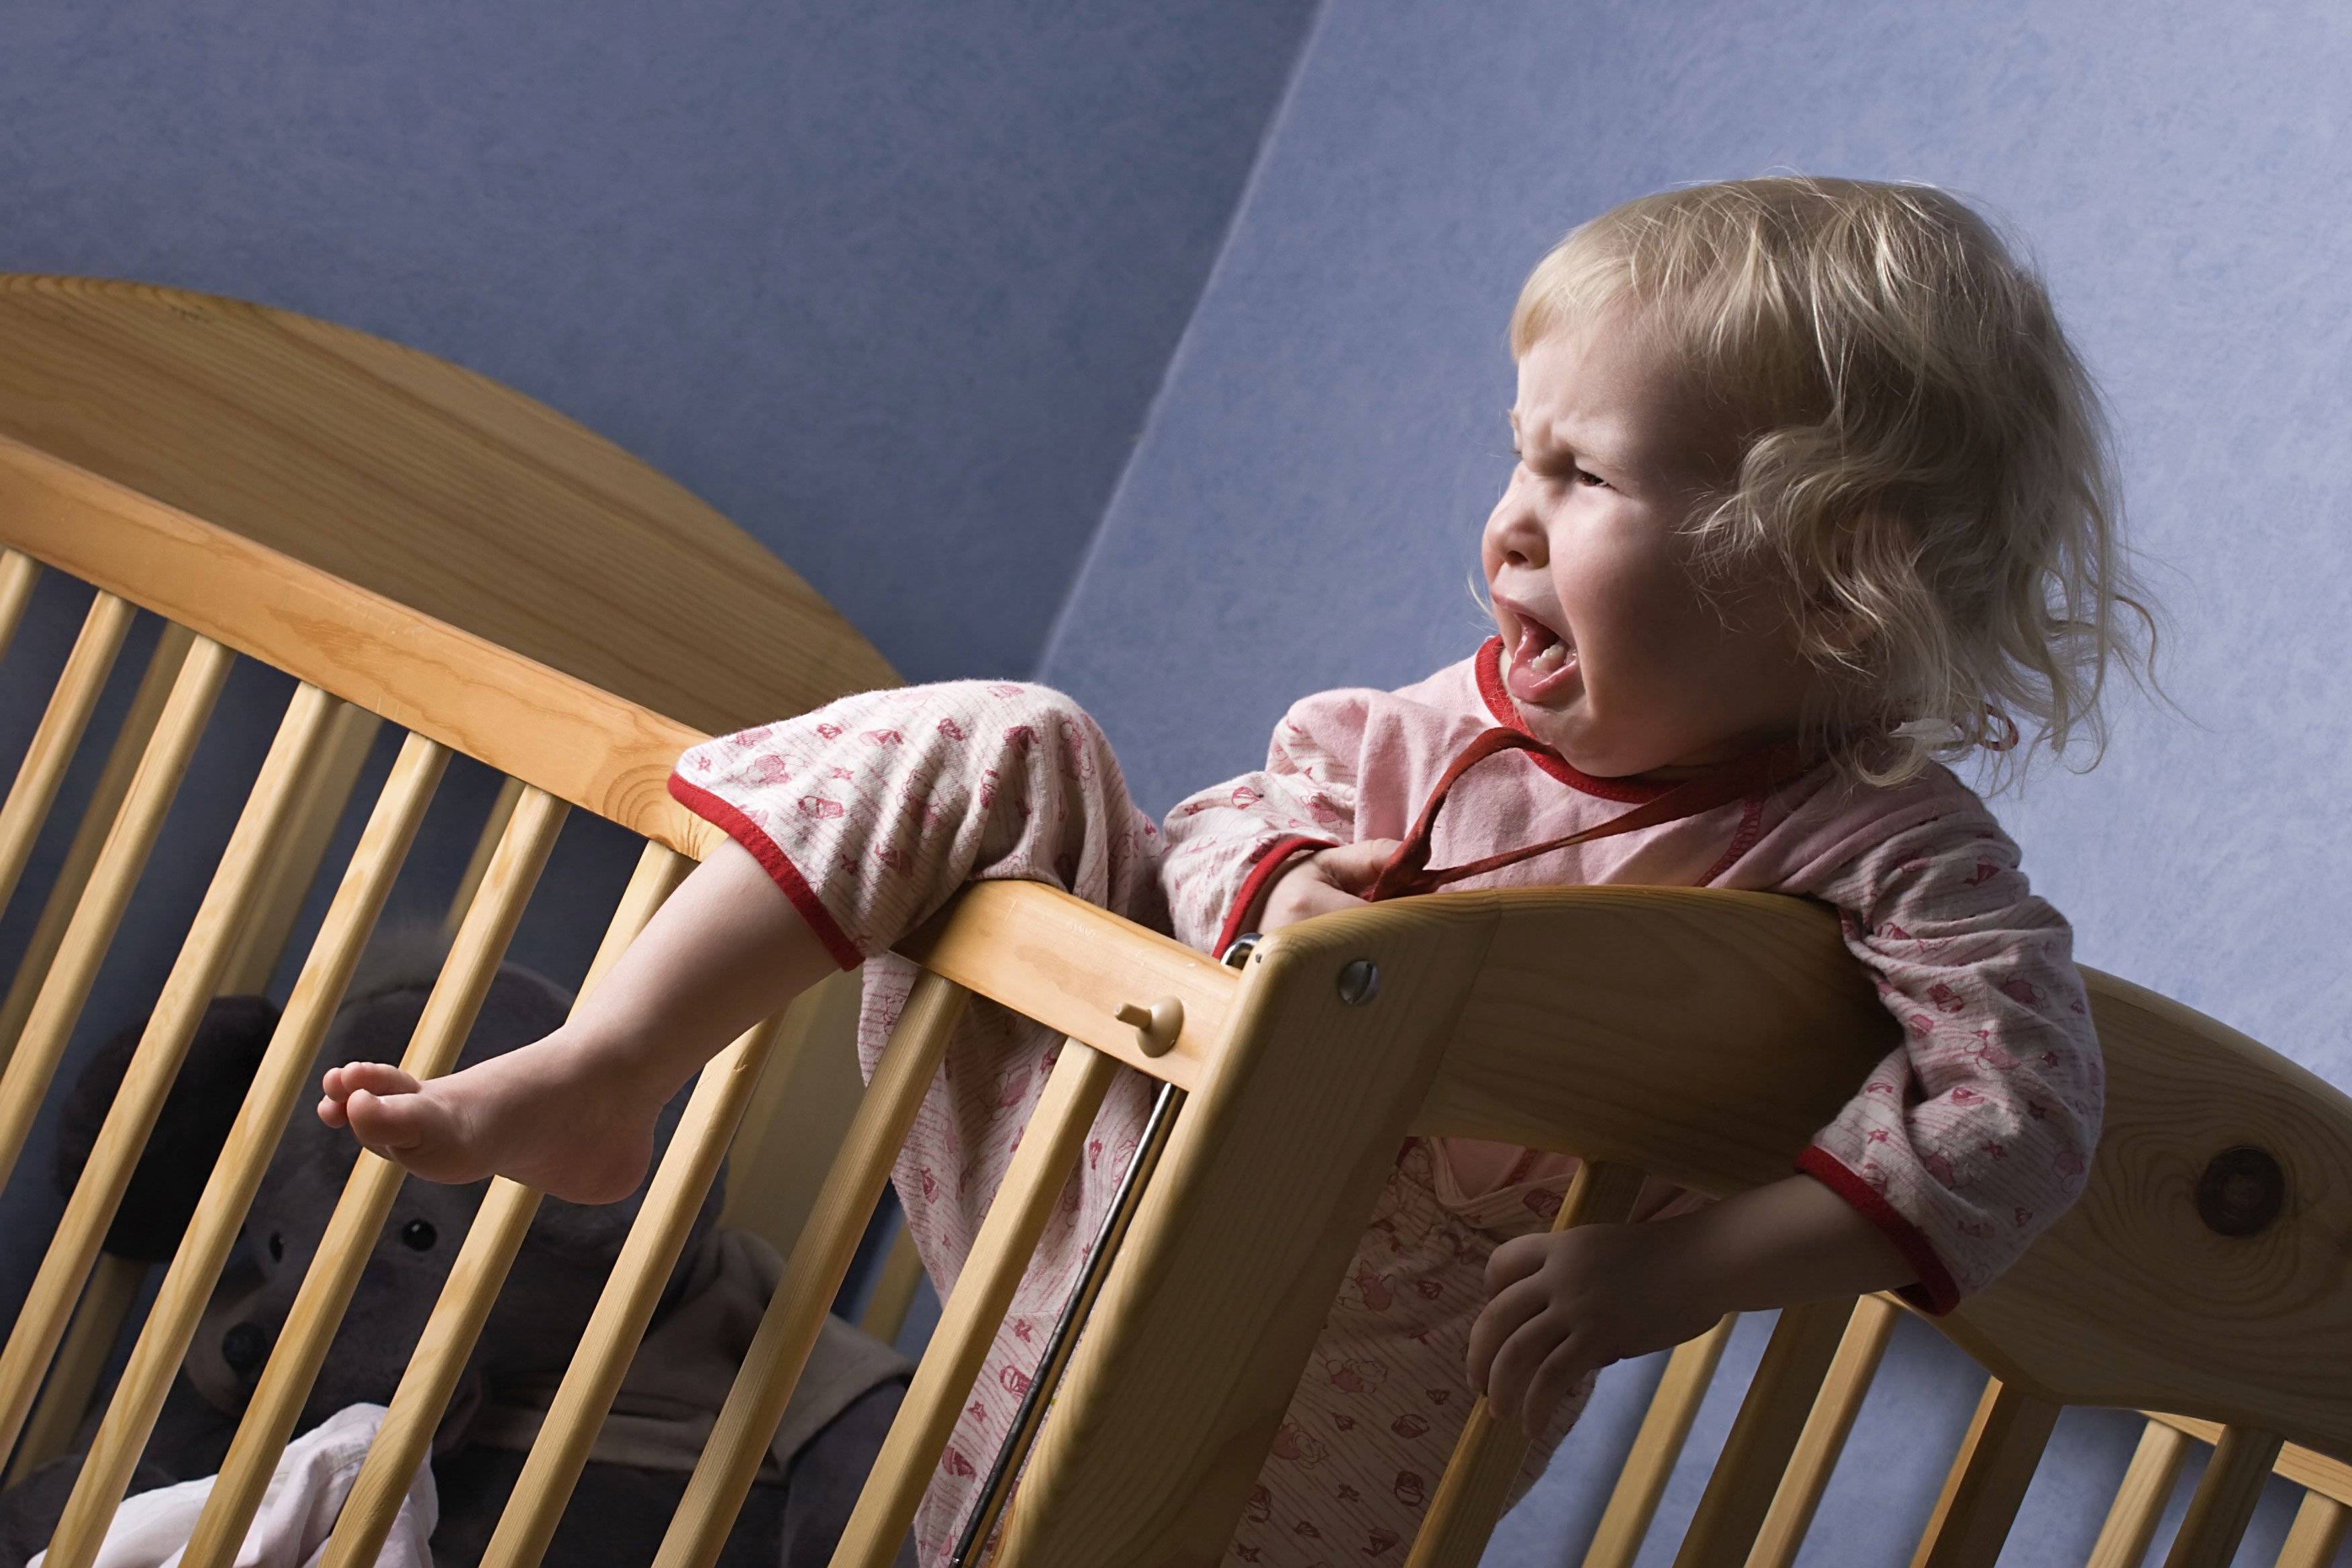 Приучаем ребёнка спать в своей кроватке: полезные советы психолога и 9 распространенных ошибок